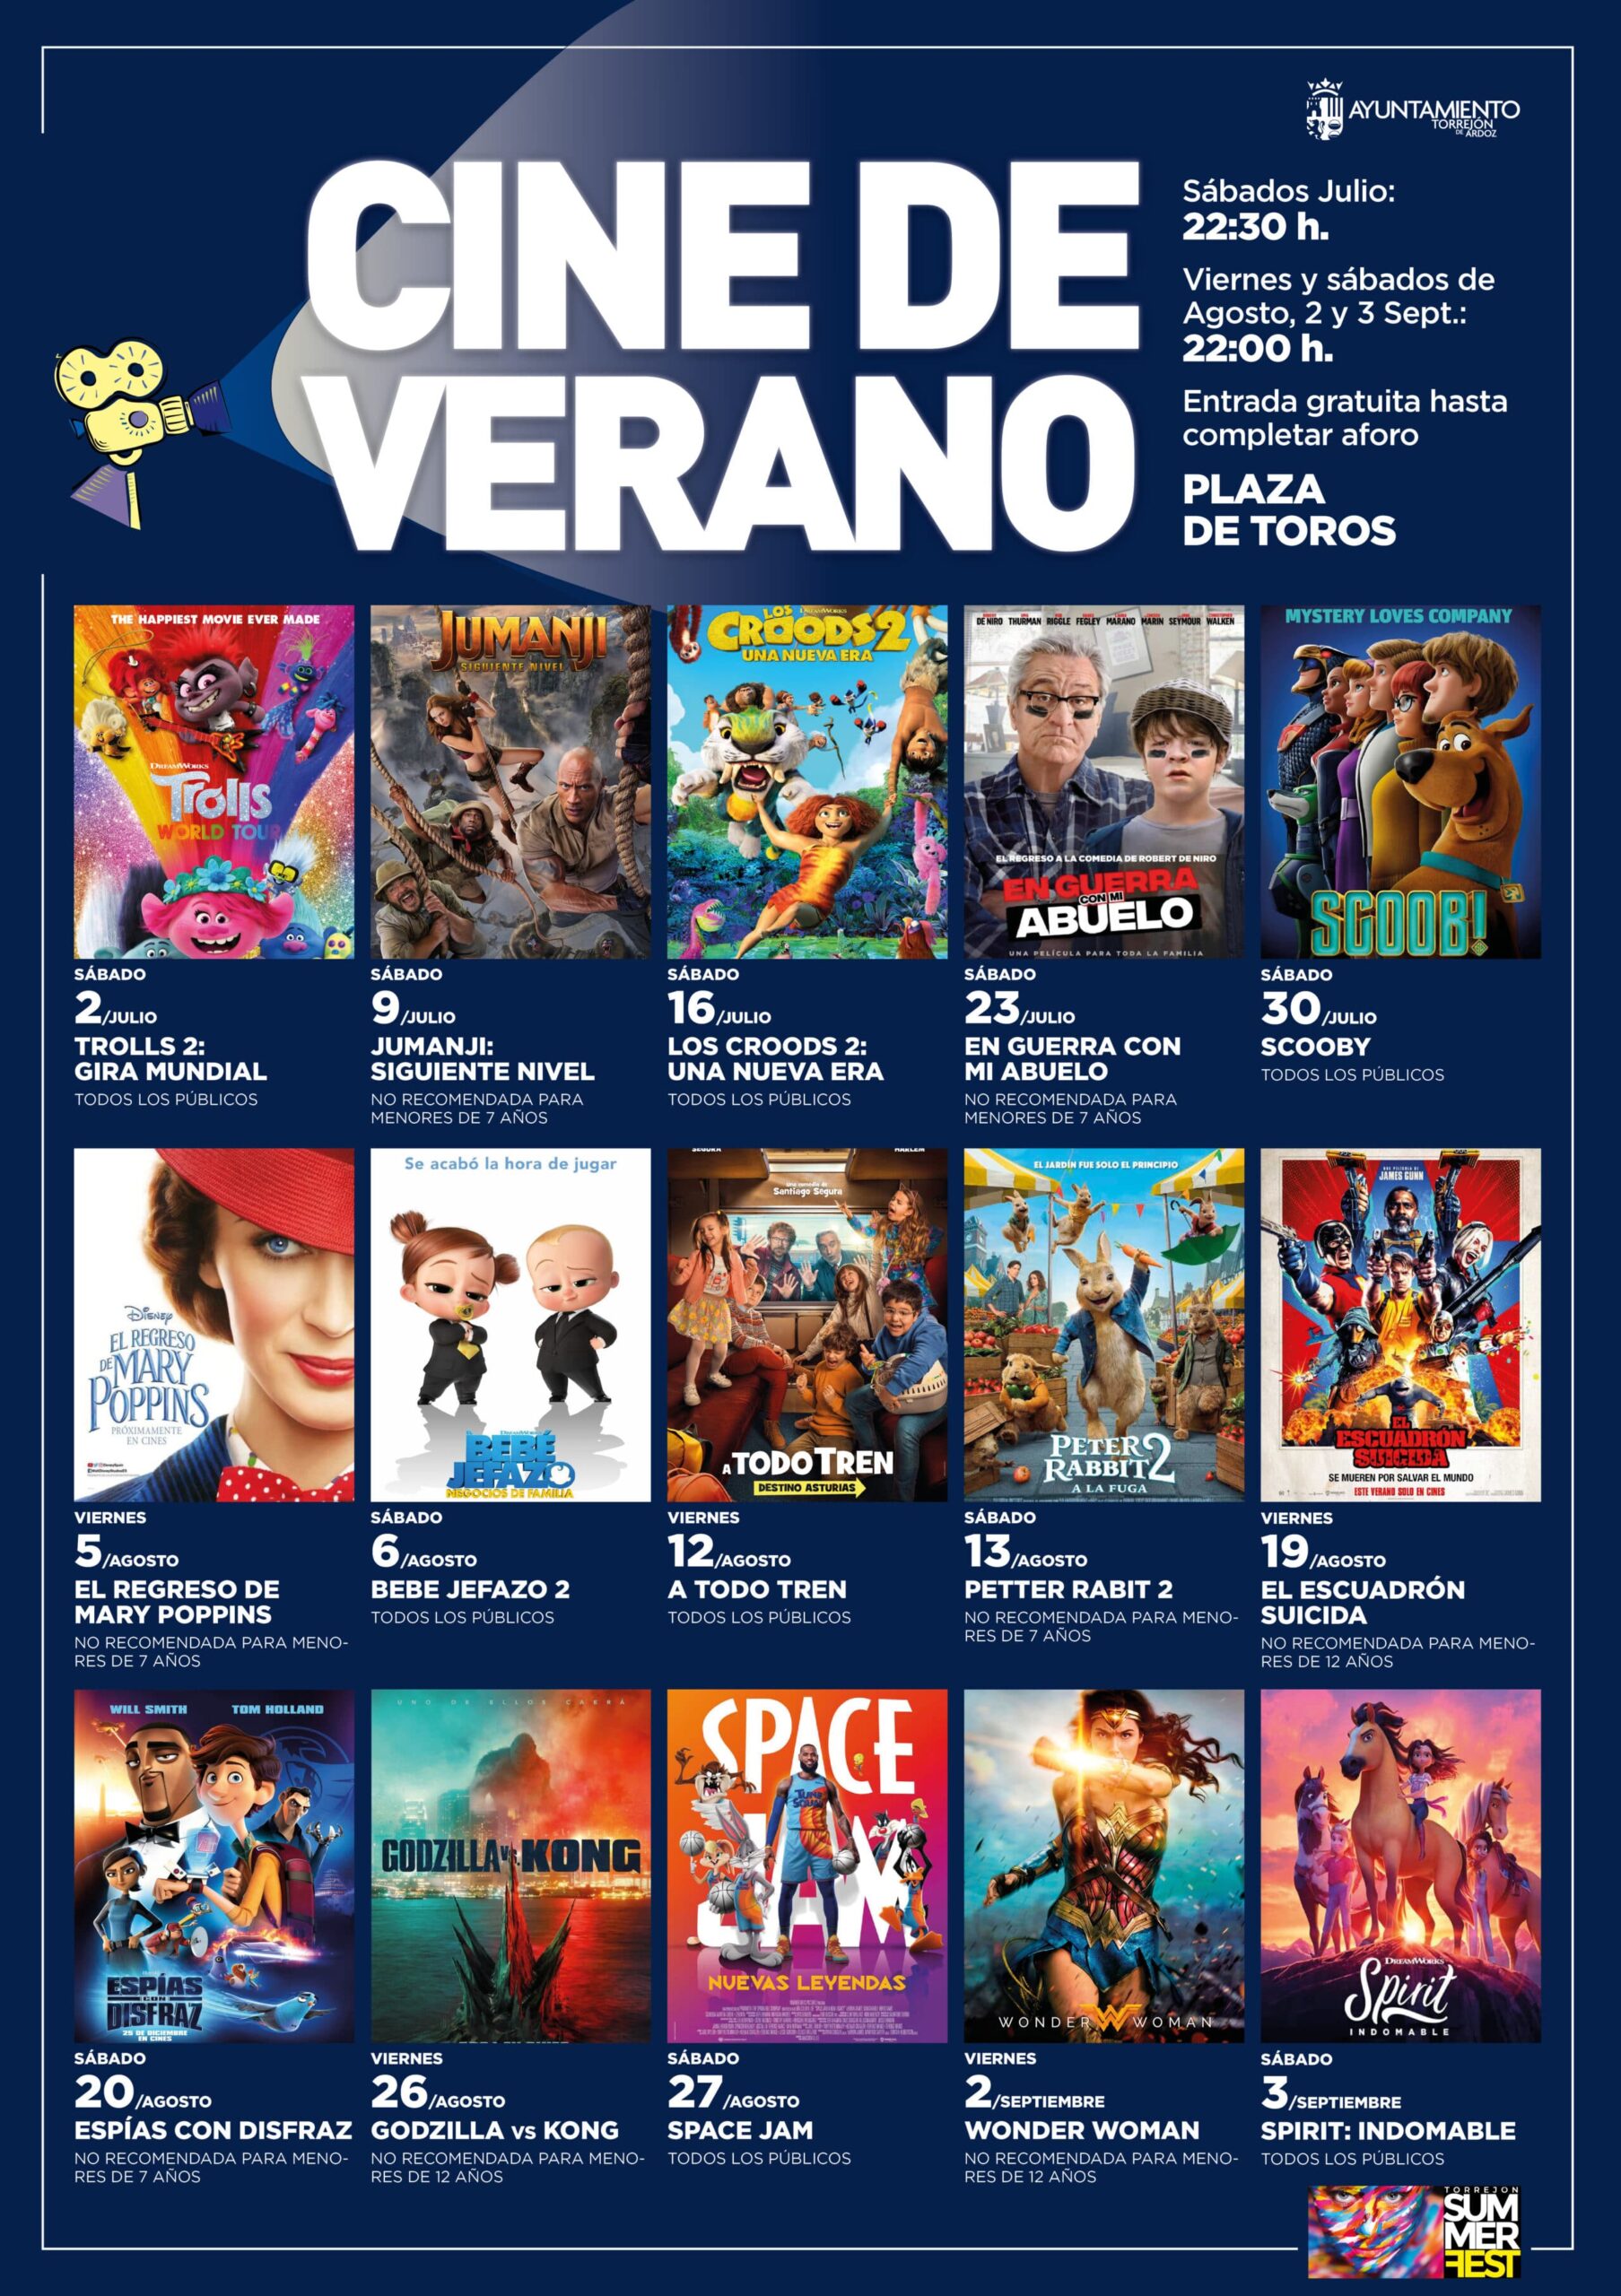 Torrejón Cine de Verano Cine Musical